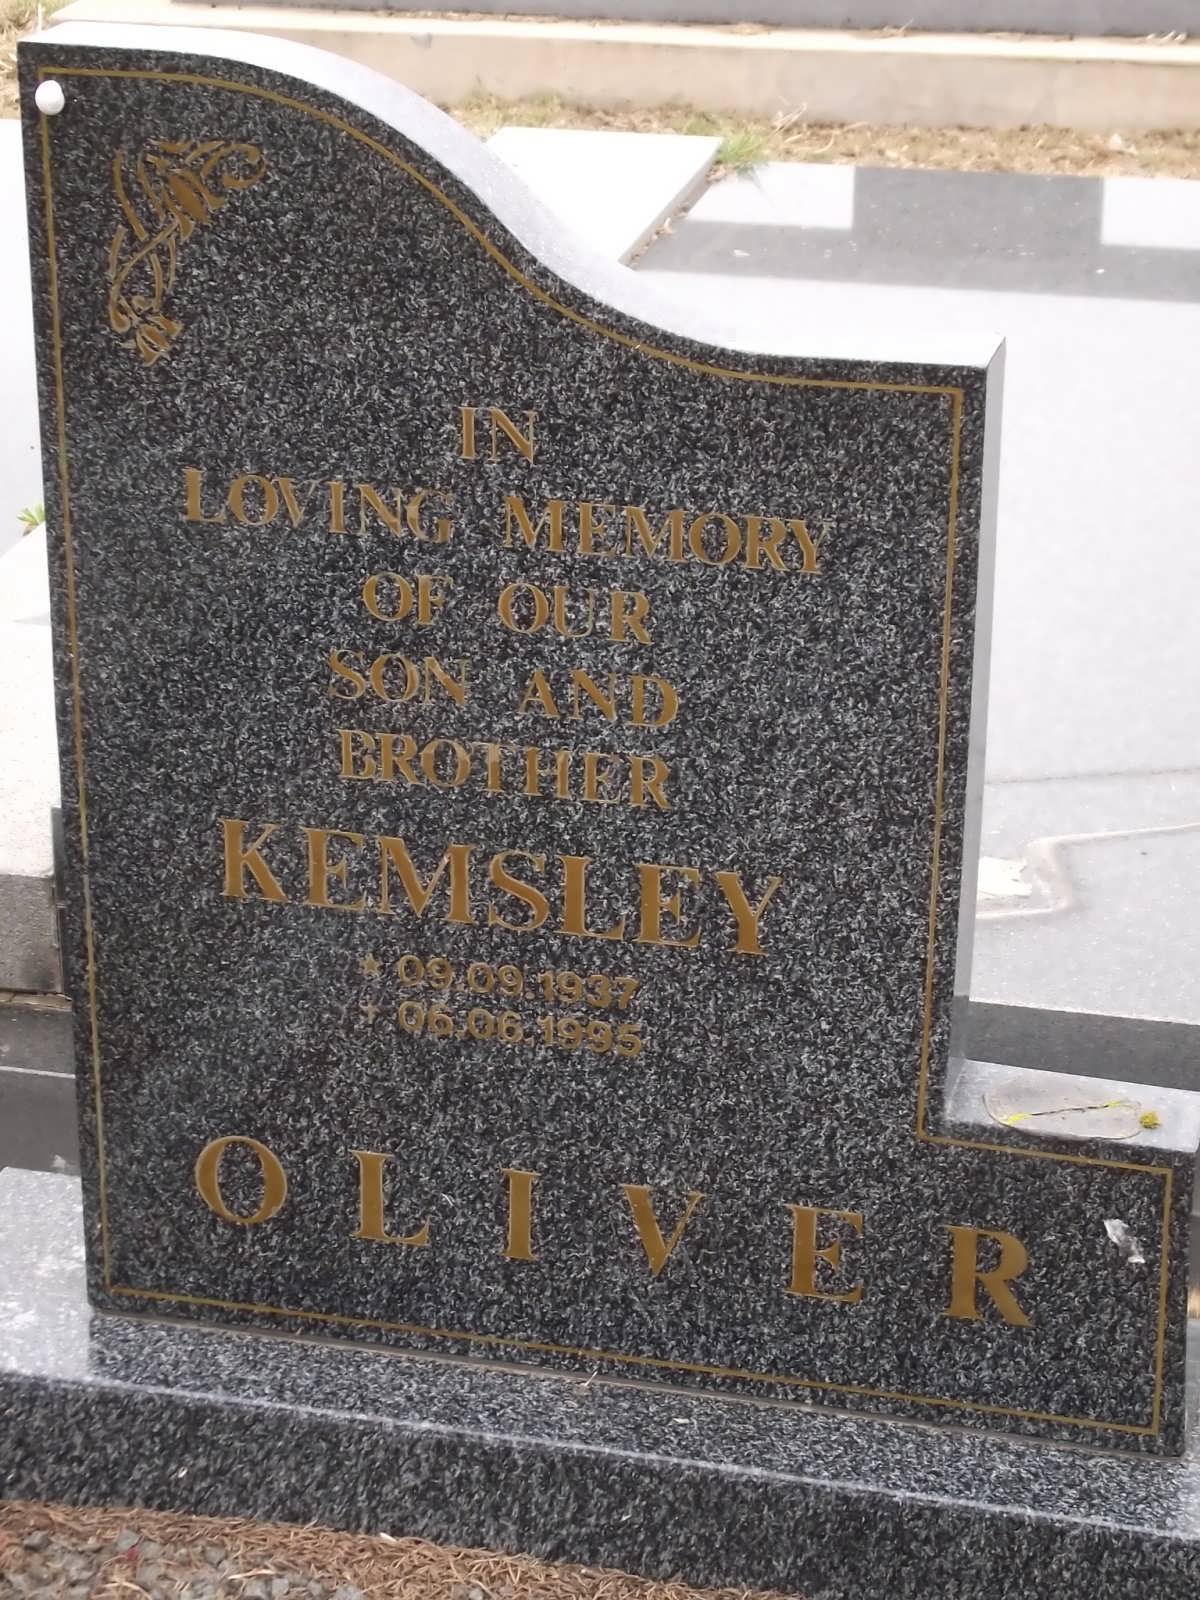 OLIVER Kemsley 1937-1995